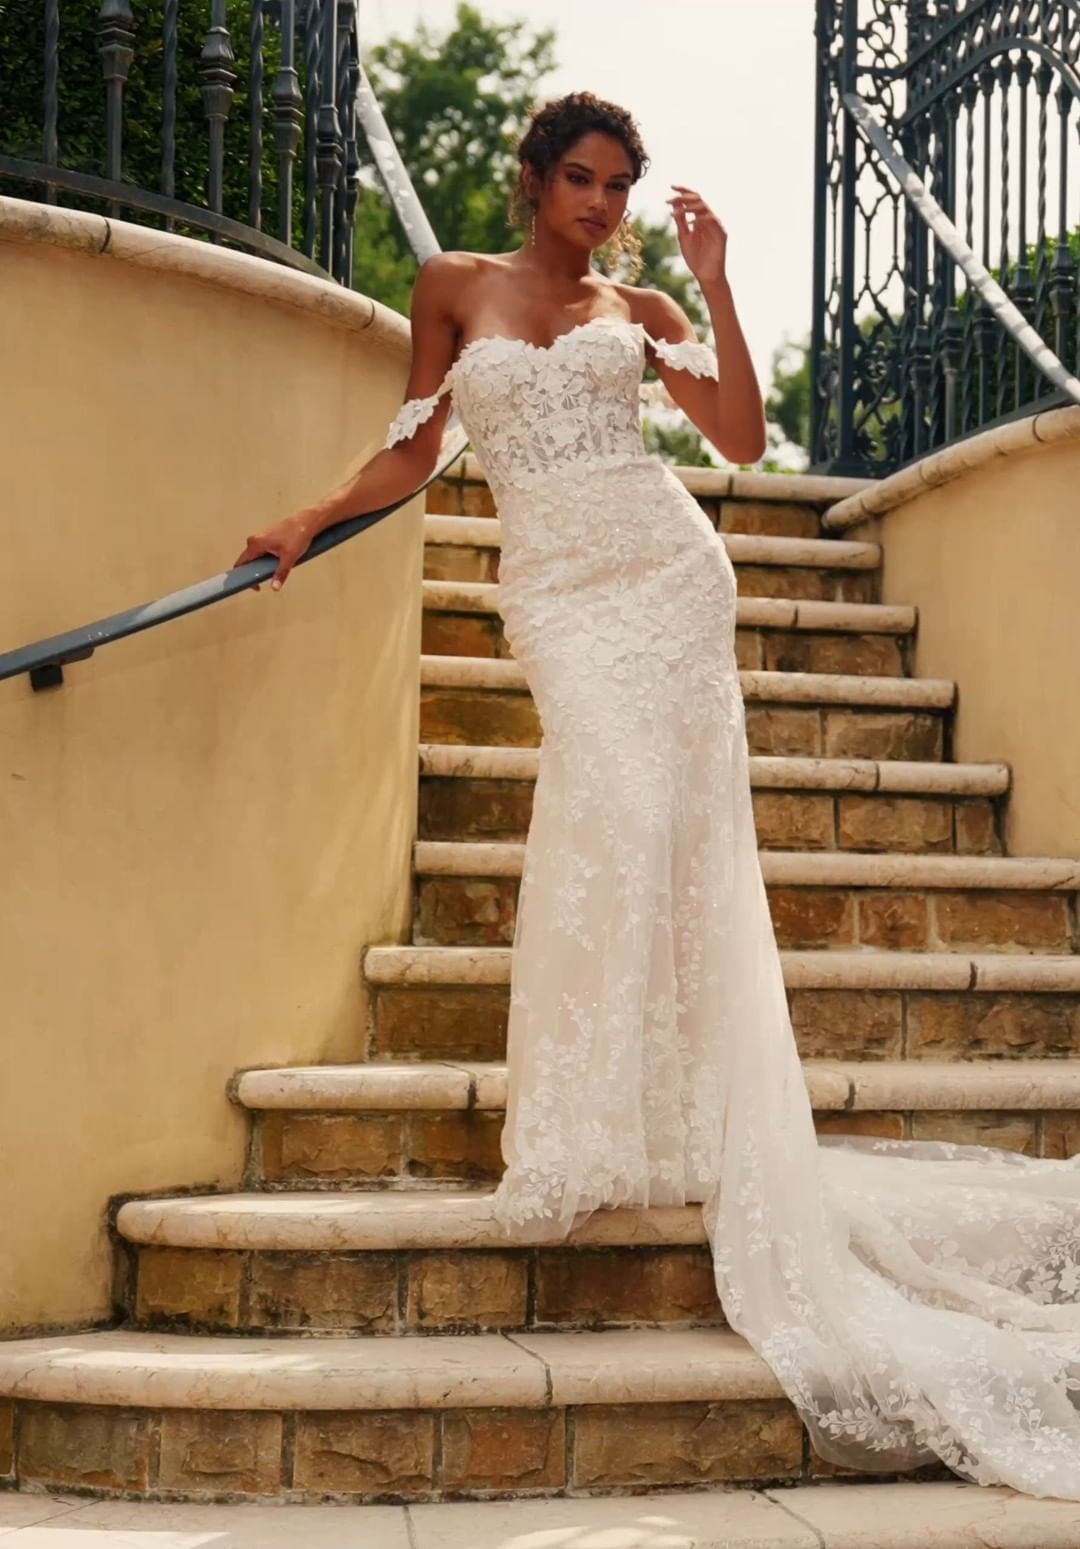 Faviana Prom Dresses Toronto, Wedding Dresses & Gowns, Amanda Linas Faviana  S10500 Wedding Dresses & Bridal Boutique Toronto